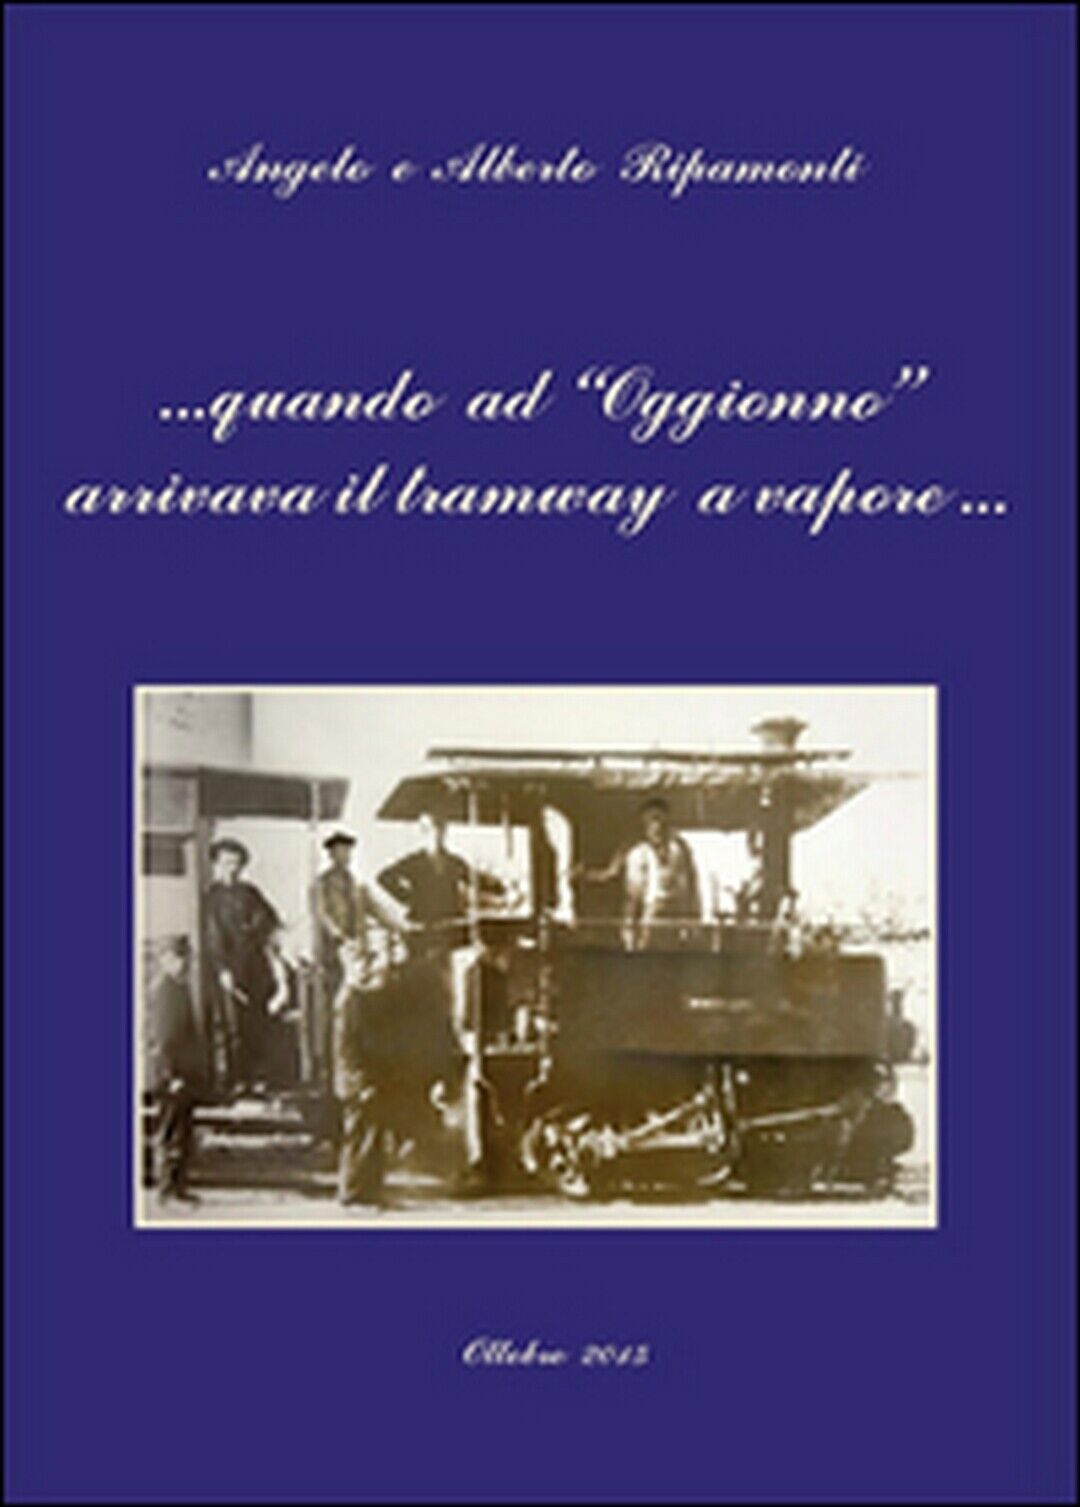 Quando ad Oggionno arrivava il tramway a vapore..., Alberto/ e Angelo Ripamonti